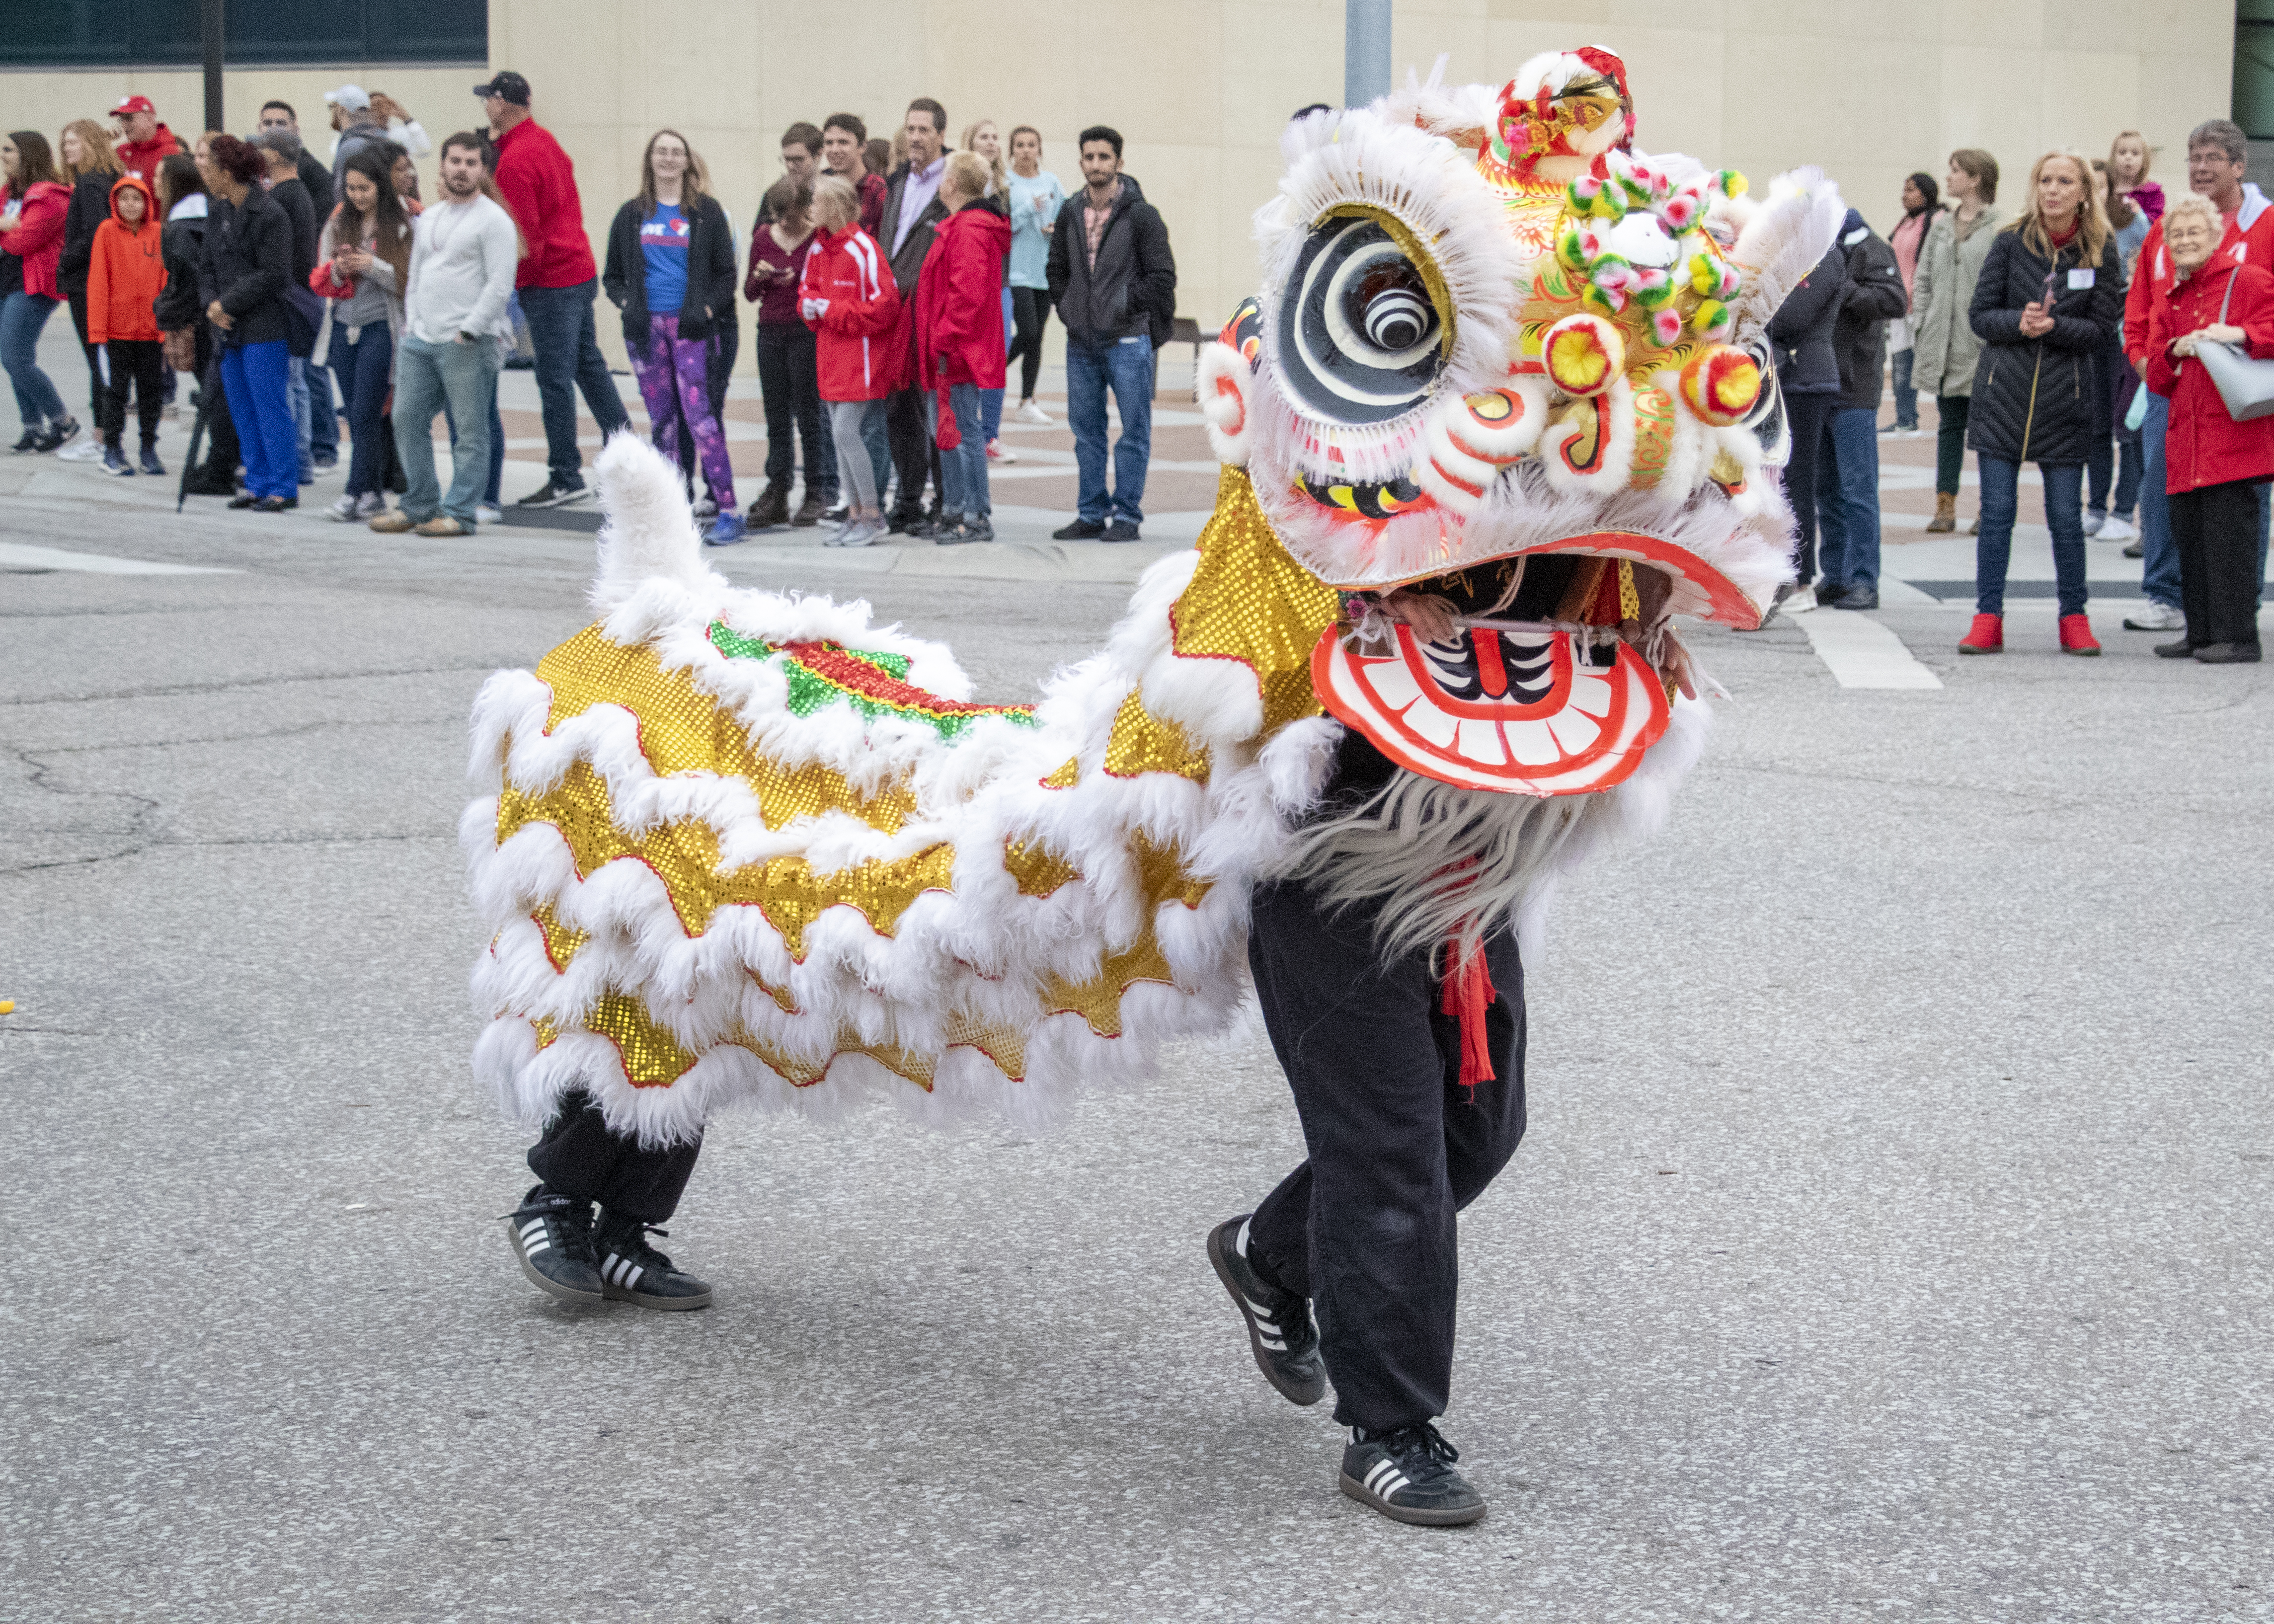 Dragon dancers entertain parade enthusiasts at the 2019 Homecoming Parade.